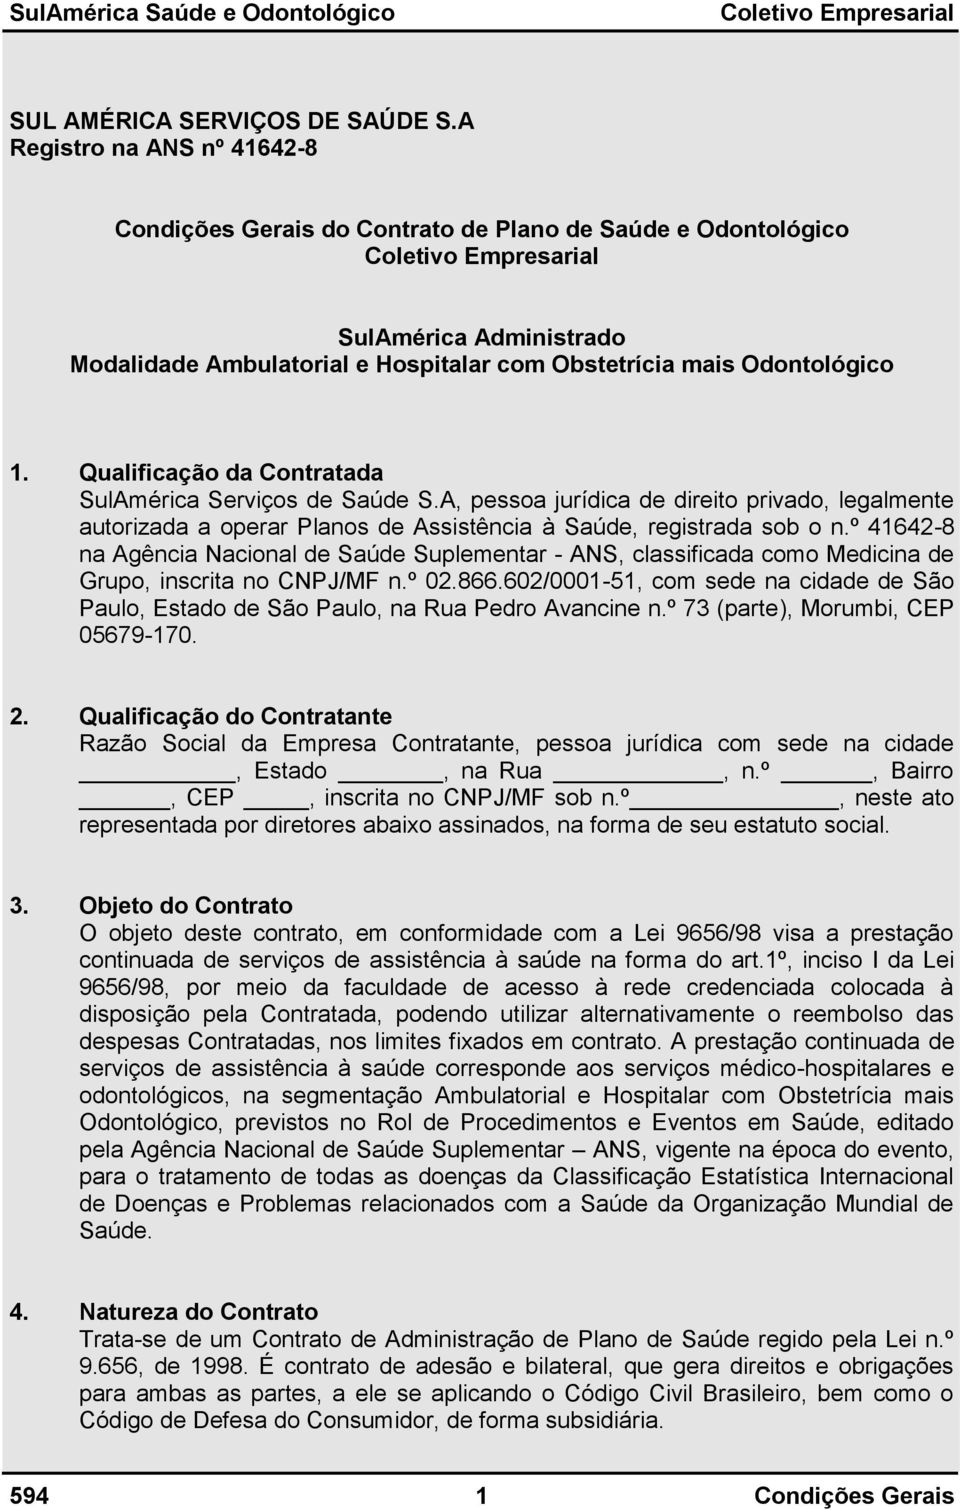 Qualificação da Contratada SulAmérica Serviços de Saúde S.A, pessoa jurídica de direito privado, legalmente autorizada a operar Planos de Assistência à Saúde, registrada sob o n.